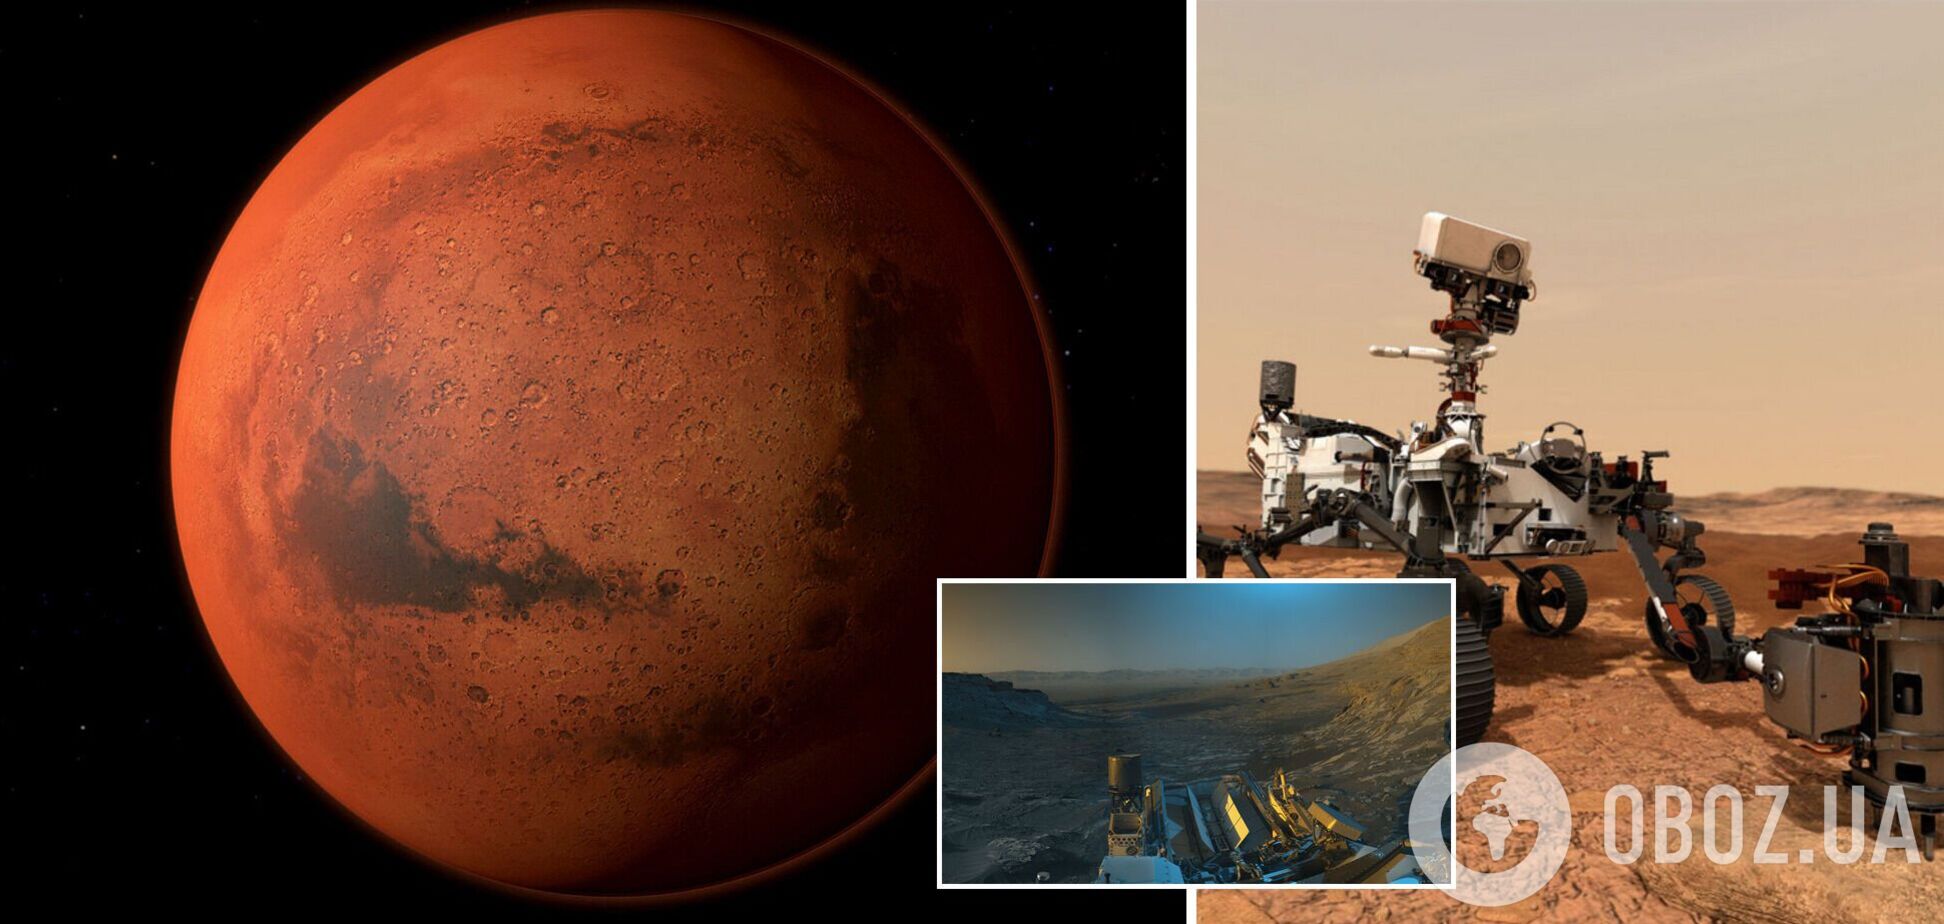 В NASA создали цветную 'открытку' марсианского пейзажа из присланных Curiosity фото Красной планеты